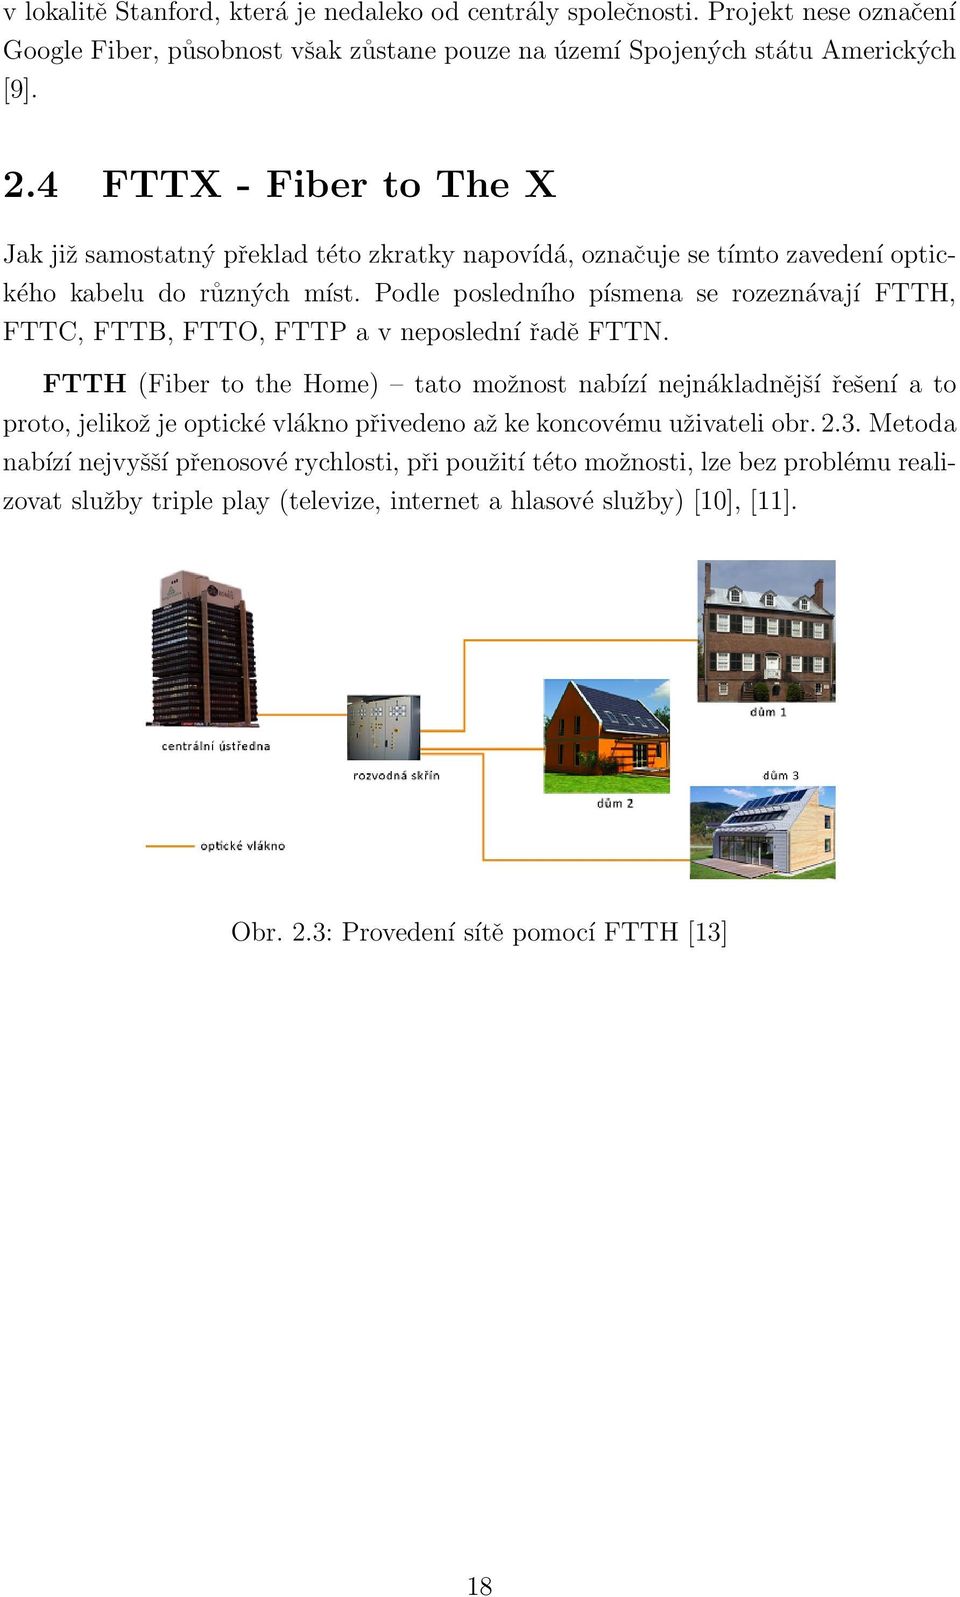 Podle posledního písmena se rozeznávají FTTH, FTTC, FTTB, FTTO, FTTP a v neposlední řadě FTTN.